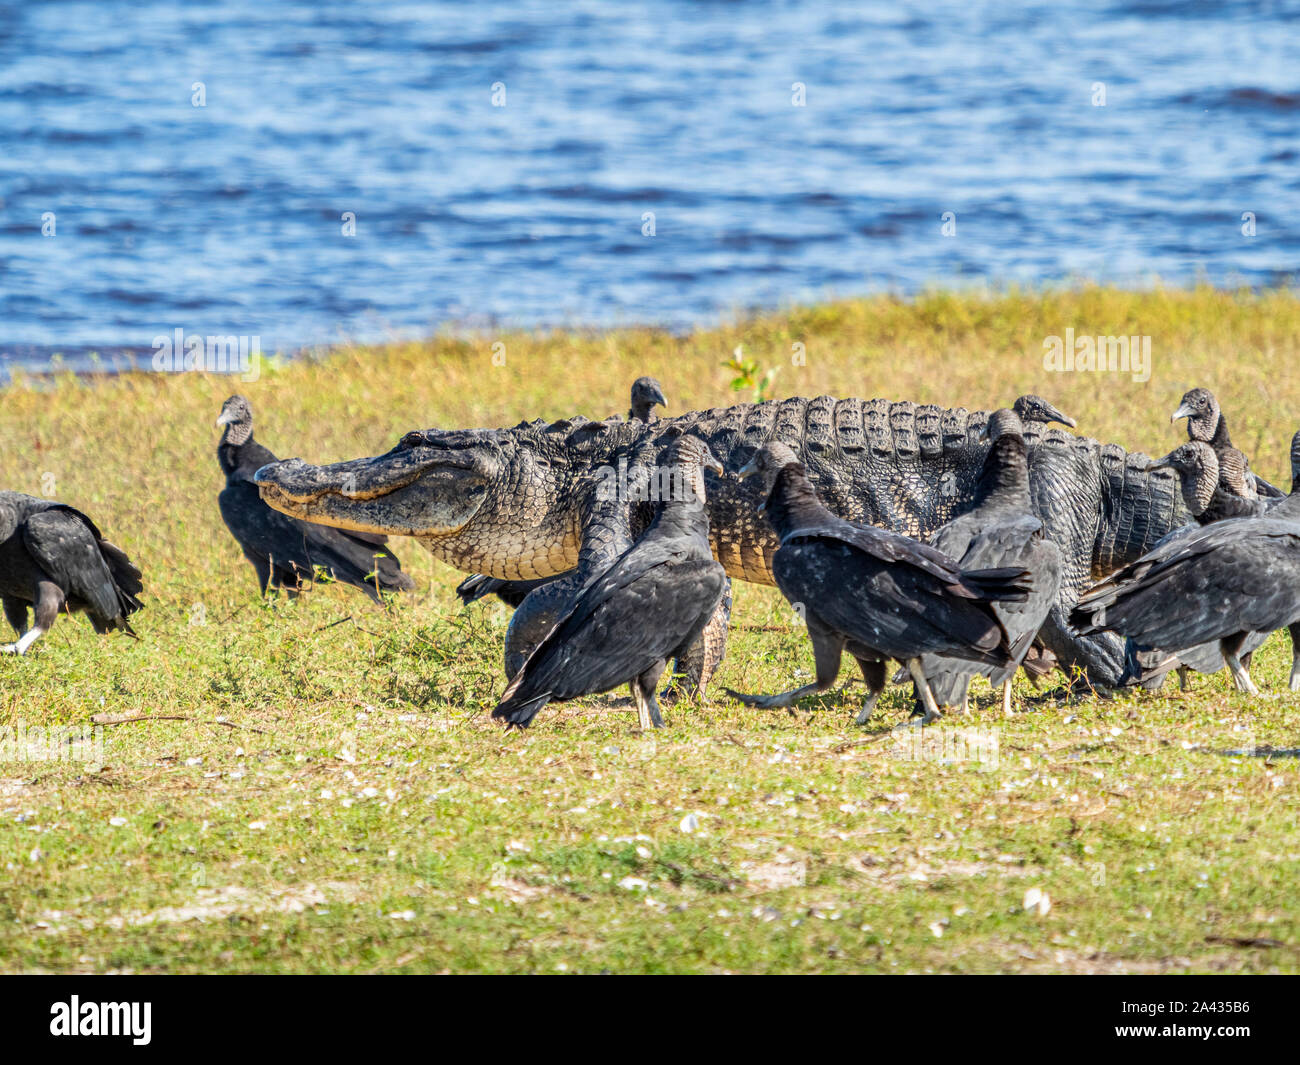 Les vautours noirs (Coragyps atratus) à la suite d'un alligator sur le bord de haute Myakka Lac dans Myakka River State Park à Sarasota Flo Banque D'Images